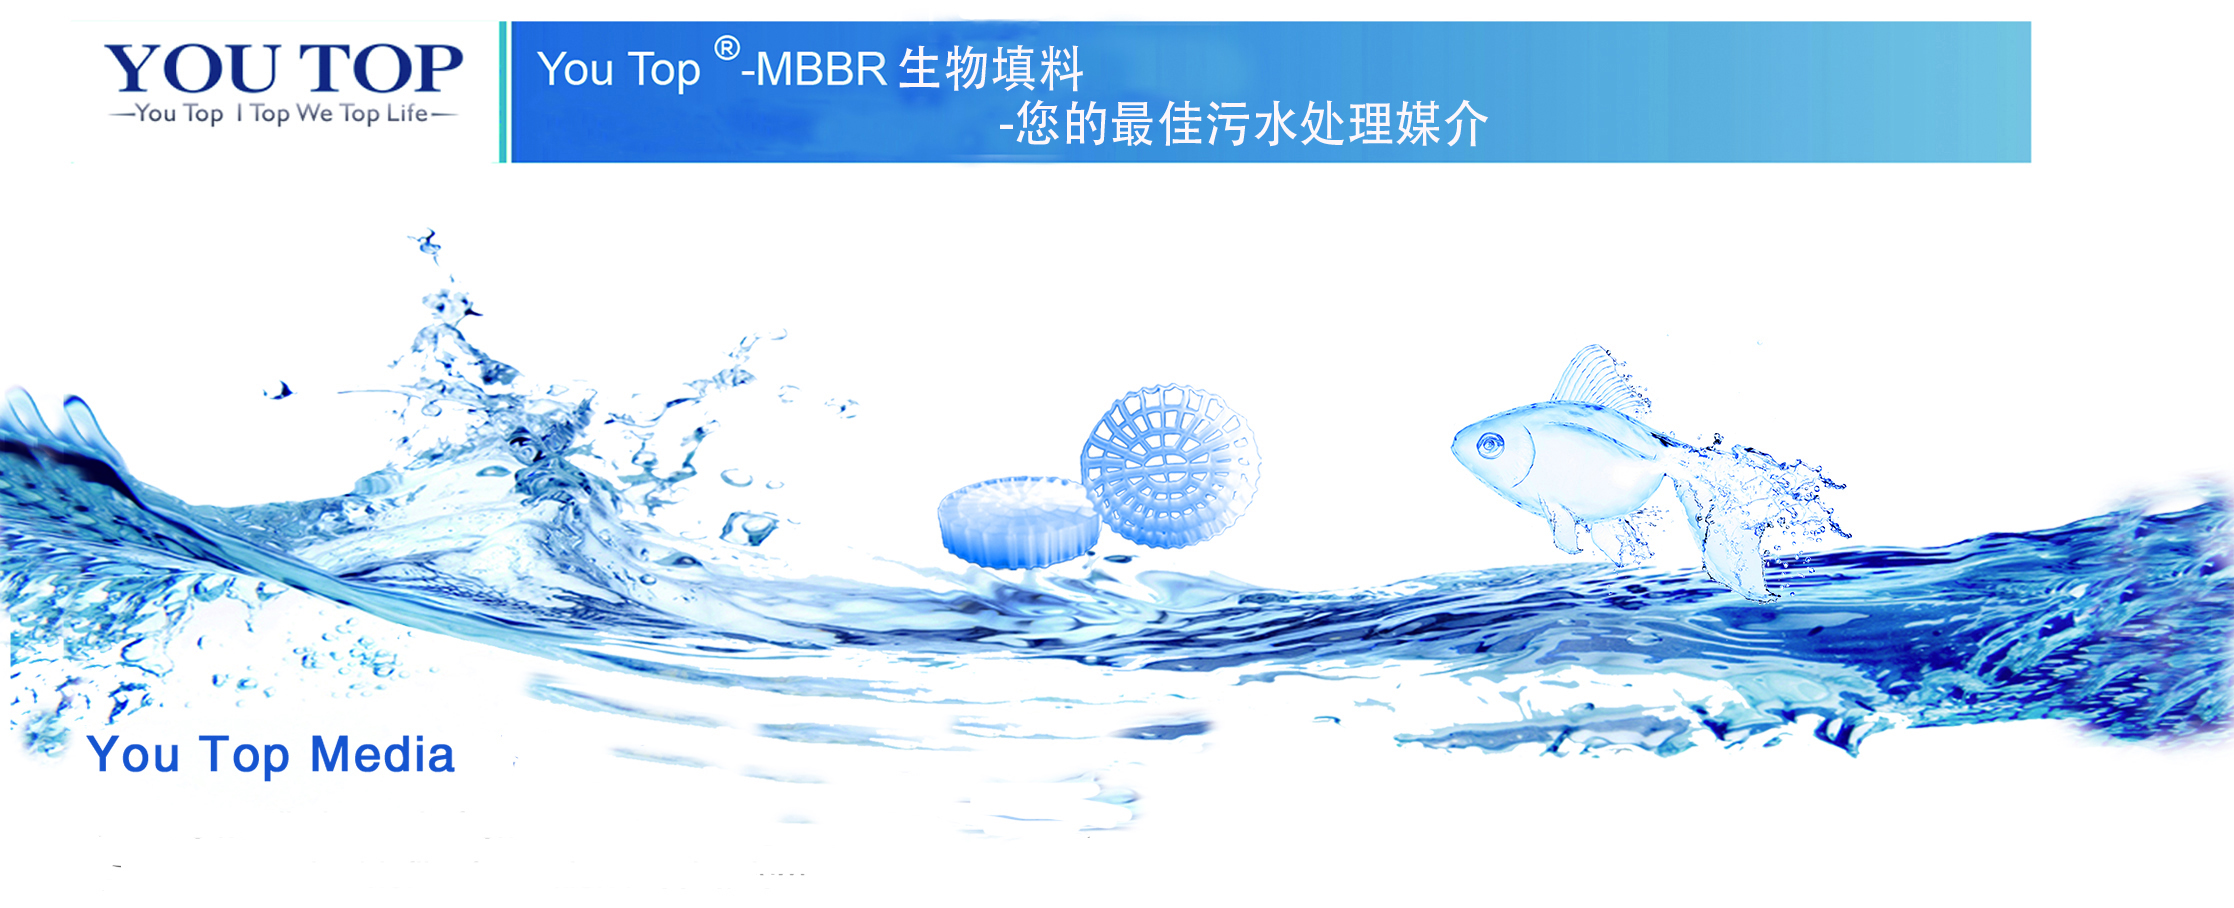 MBBR流化床生物填料